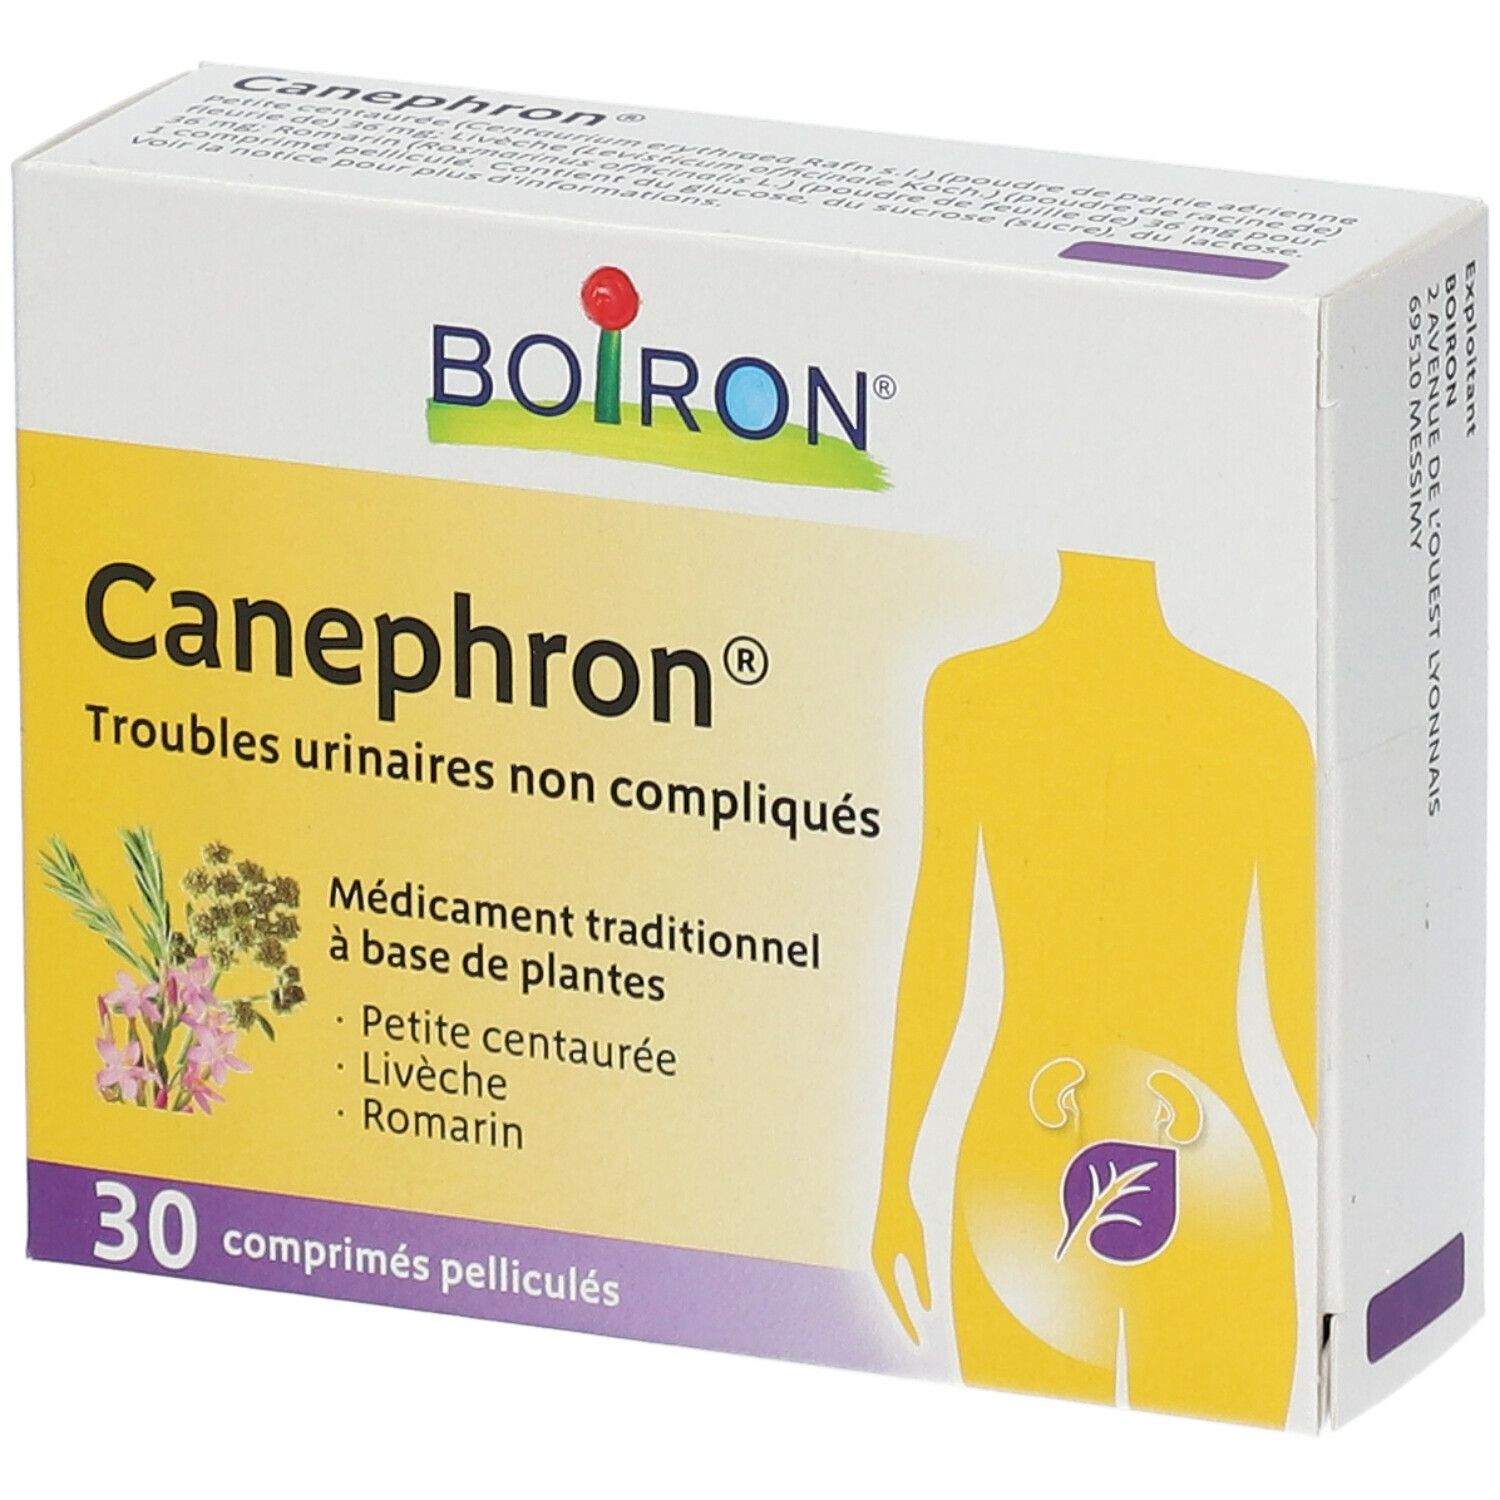 Boiron® Canephron®